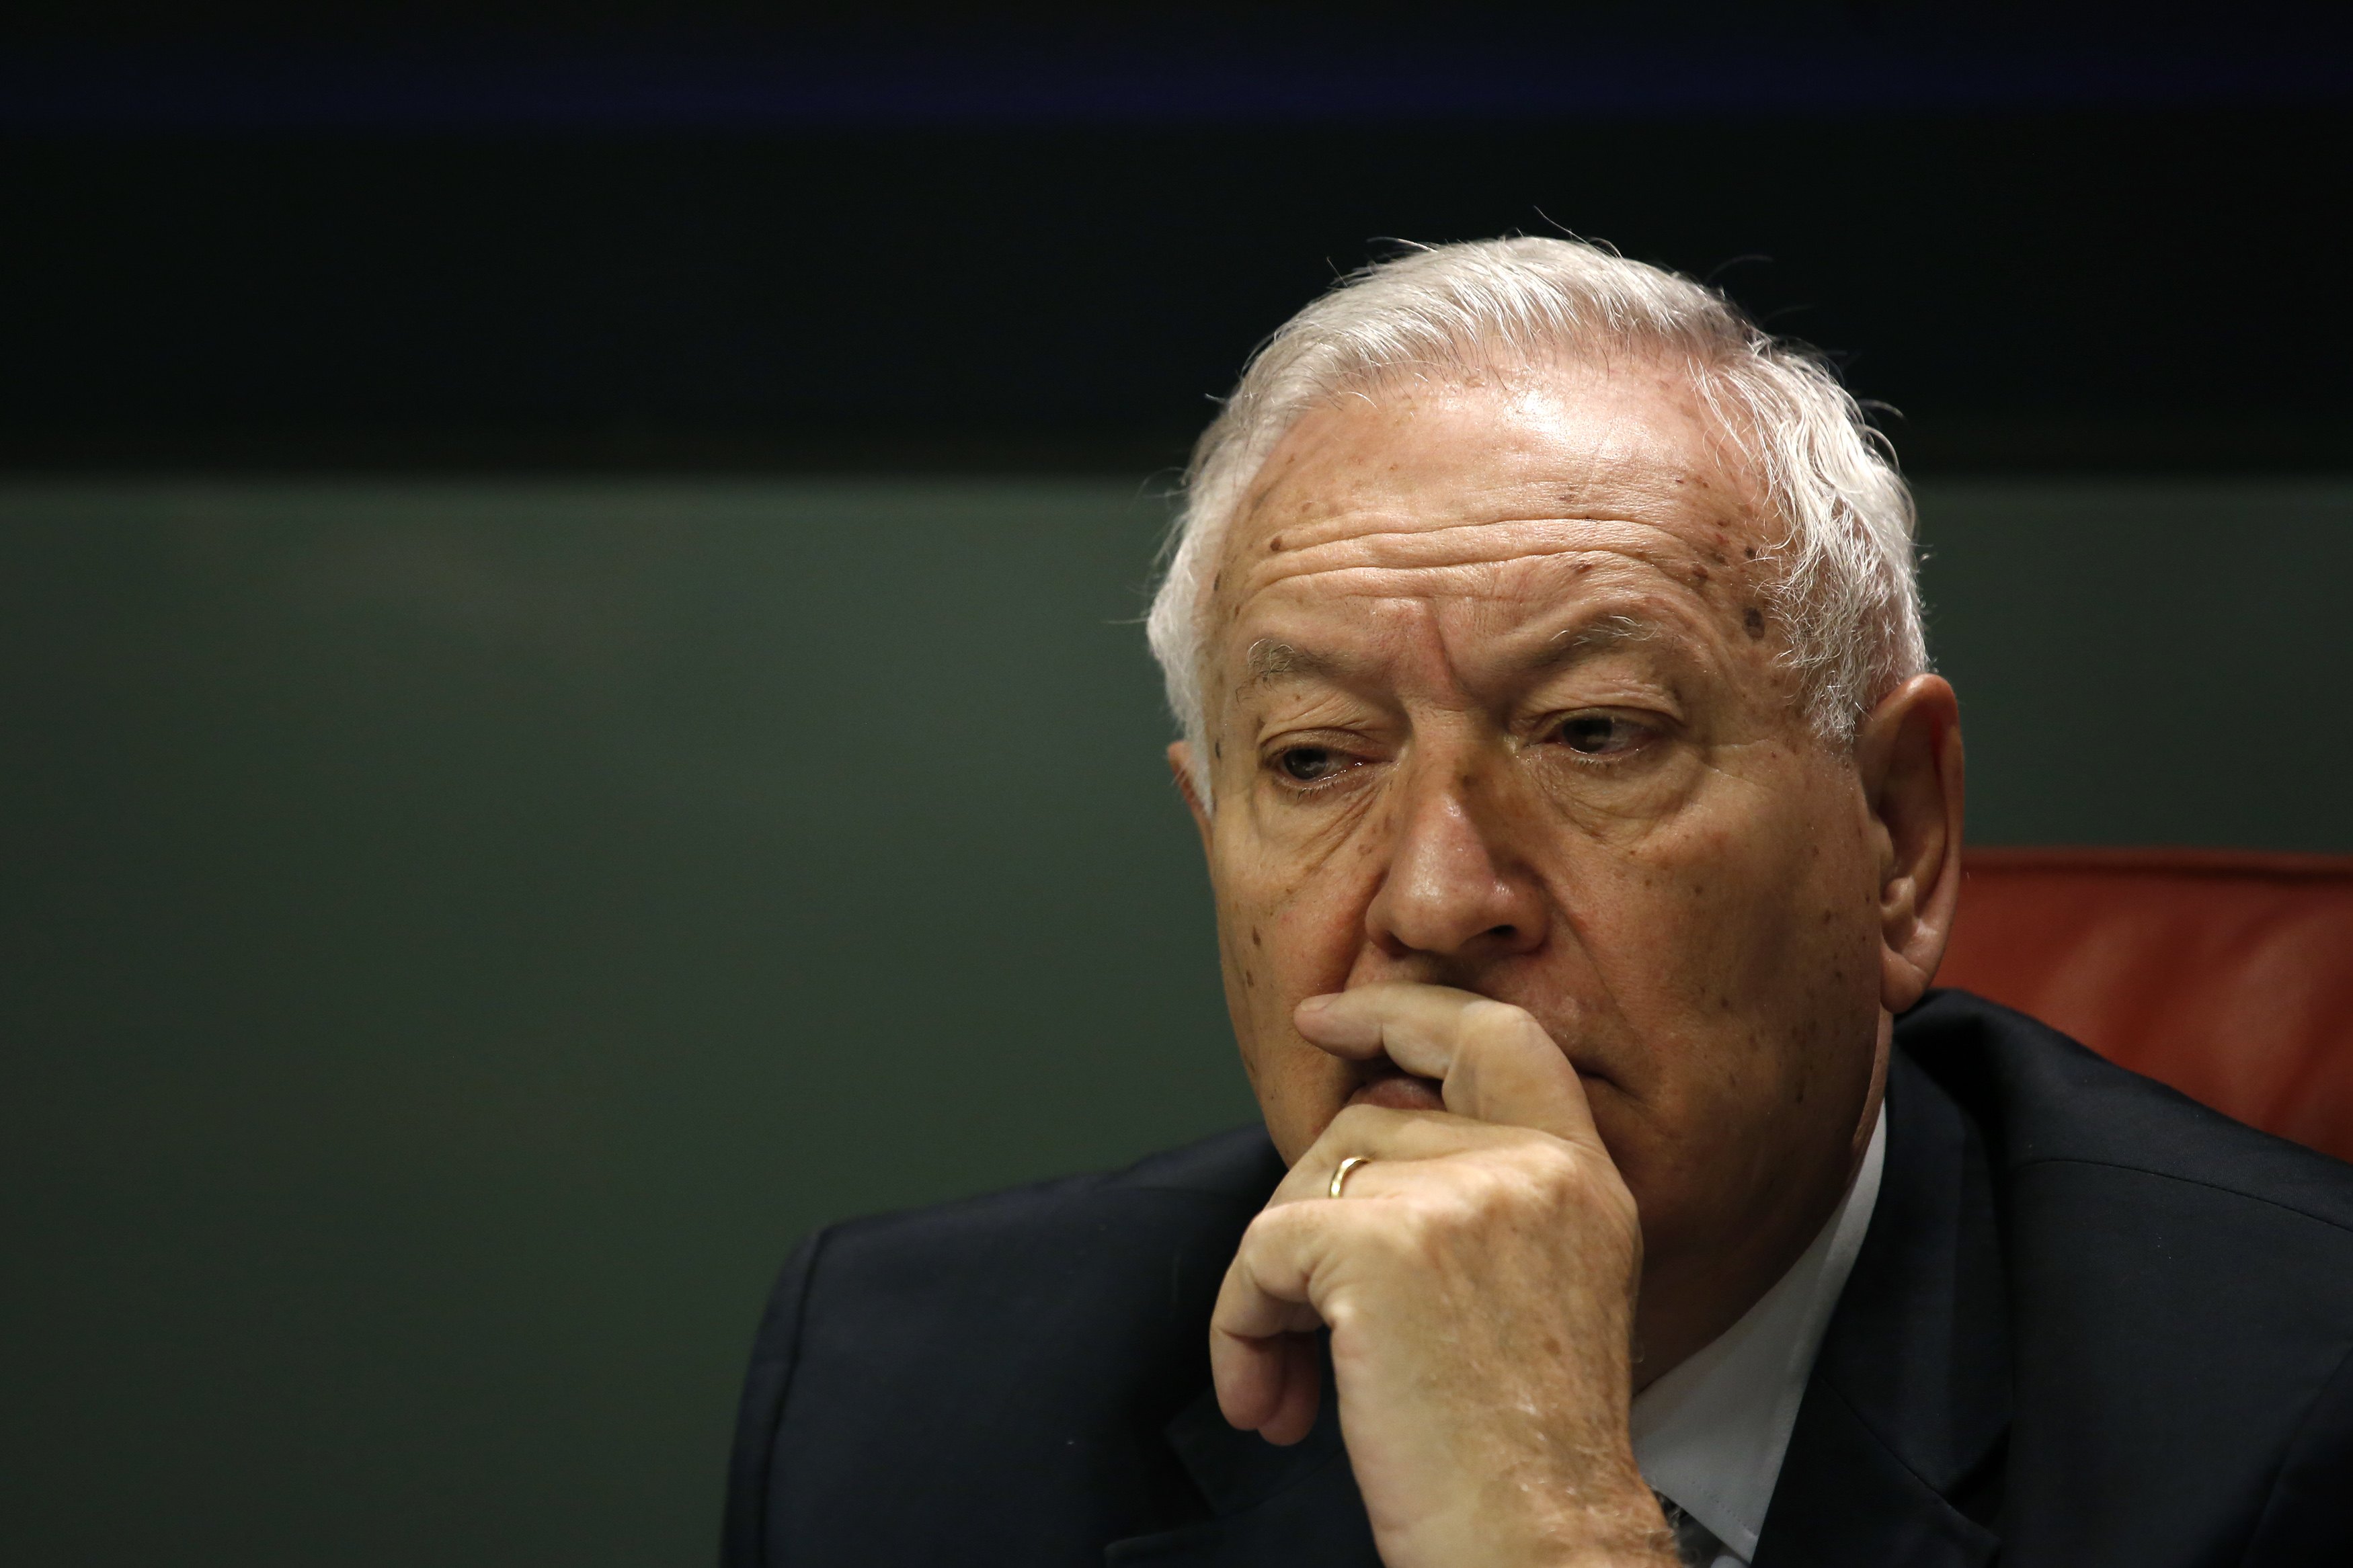 García-Margallo defiende derecho de Felipe González de viajar a Venezuela